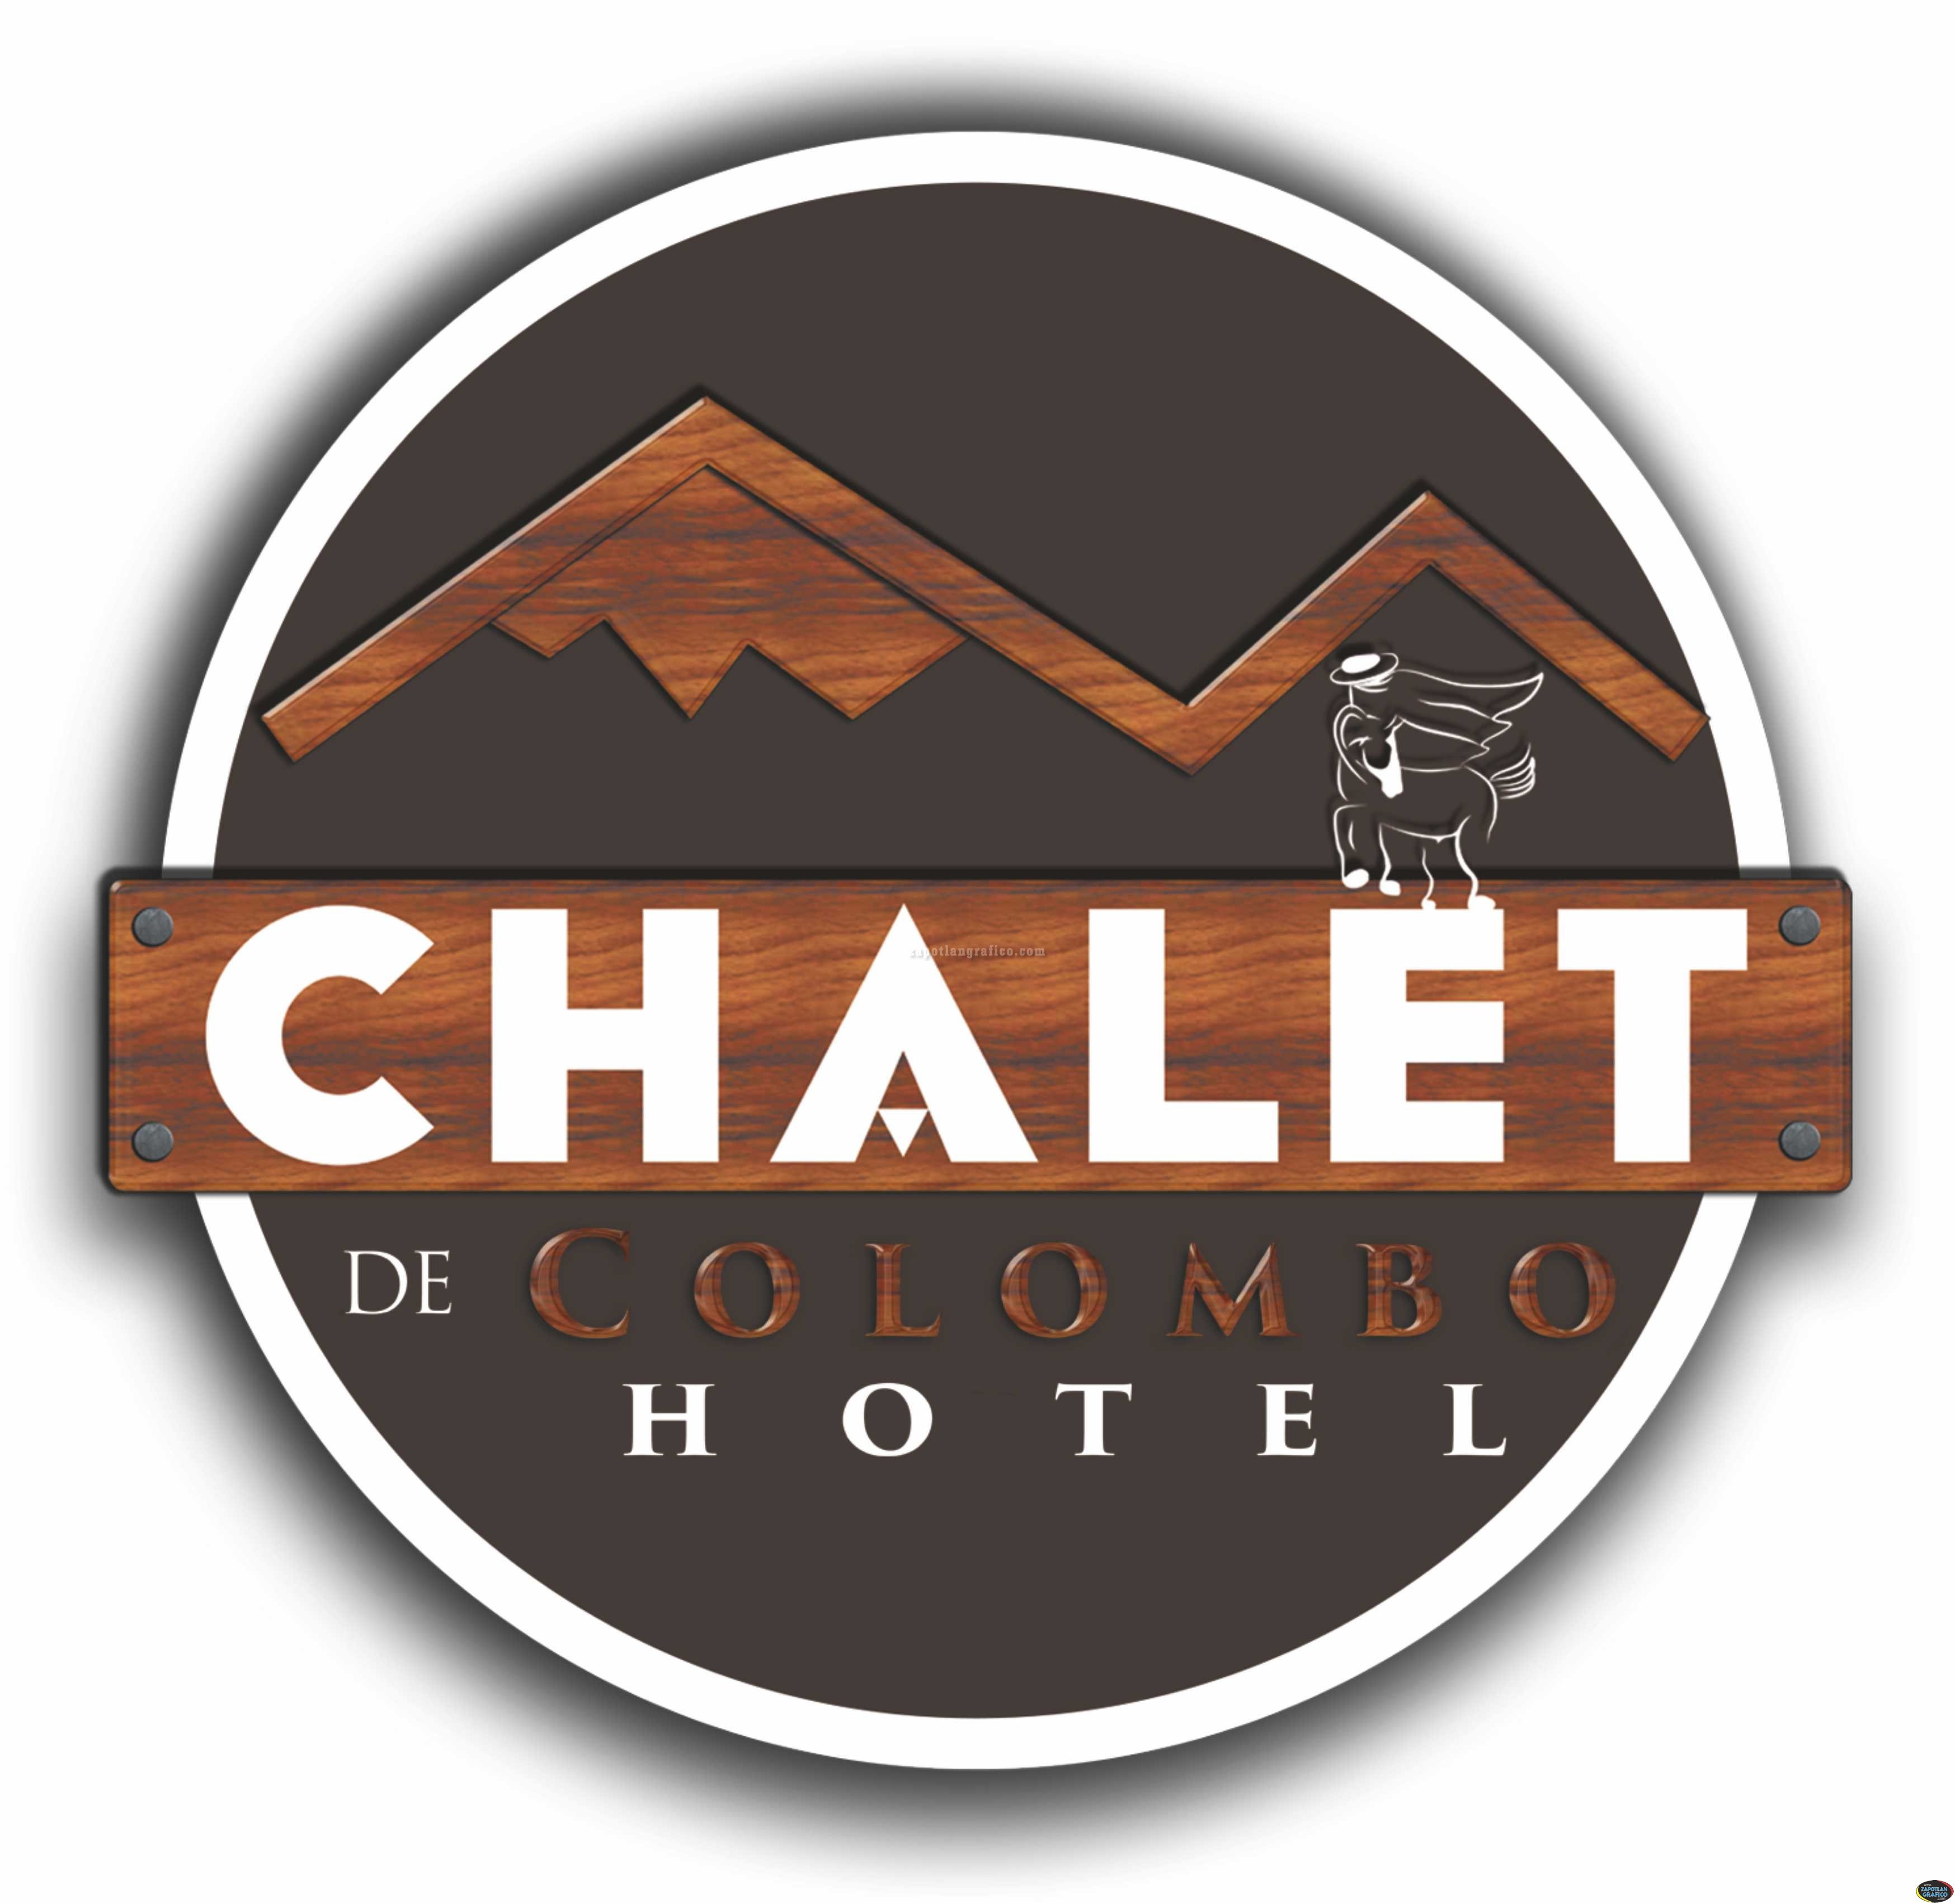 CONTACTO CHALET DE COLOMBO